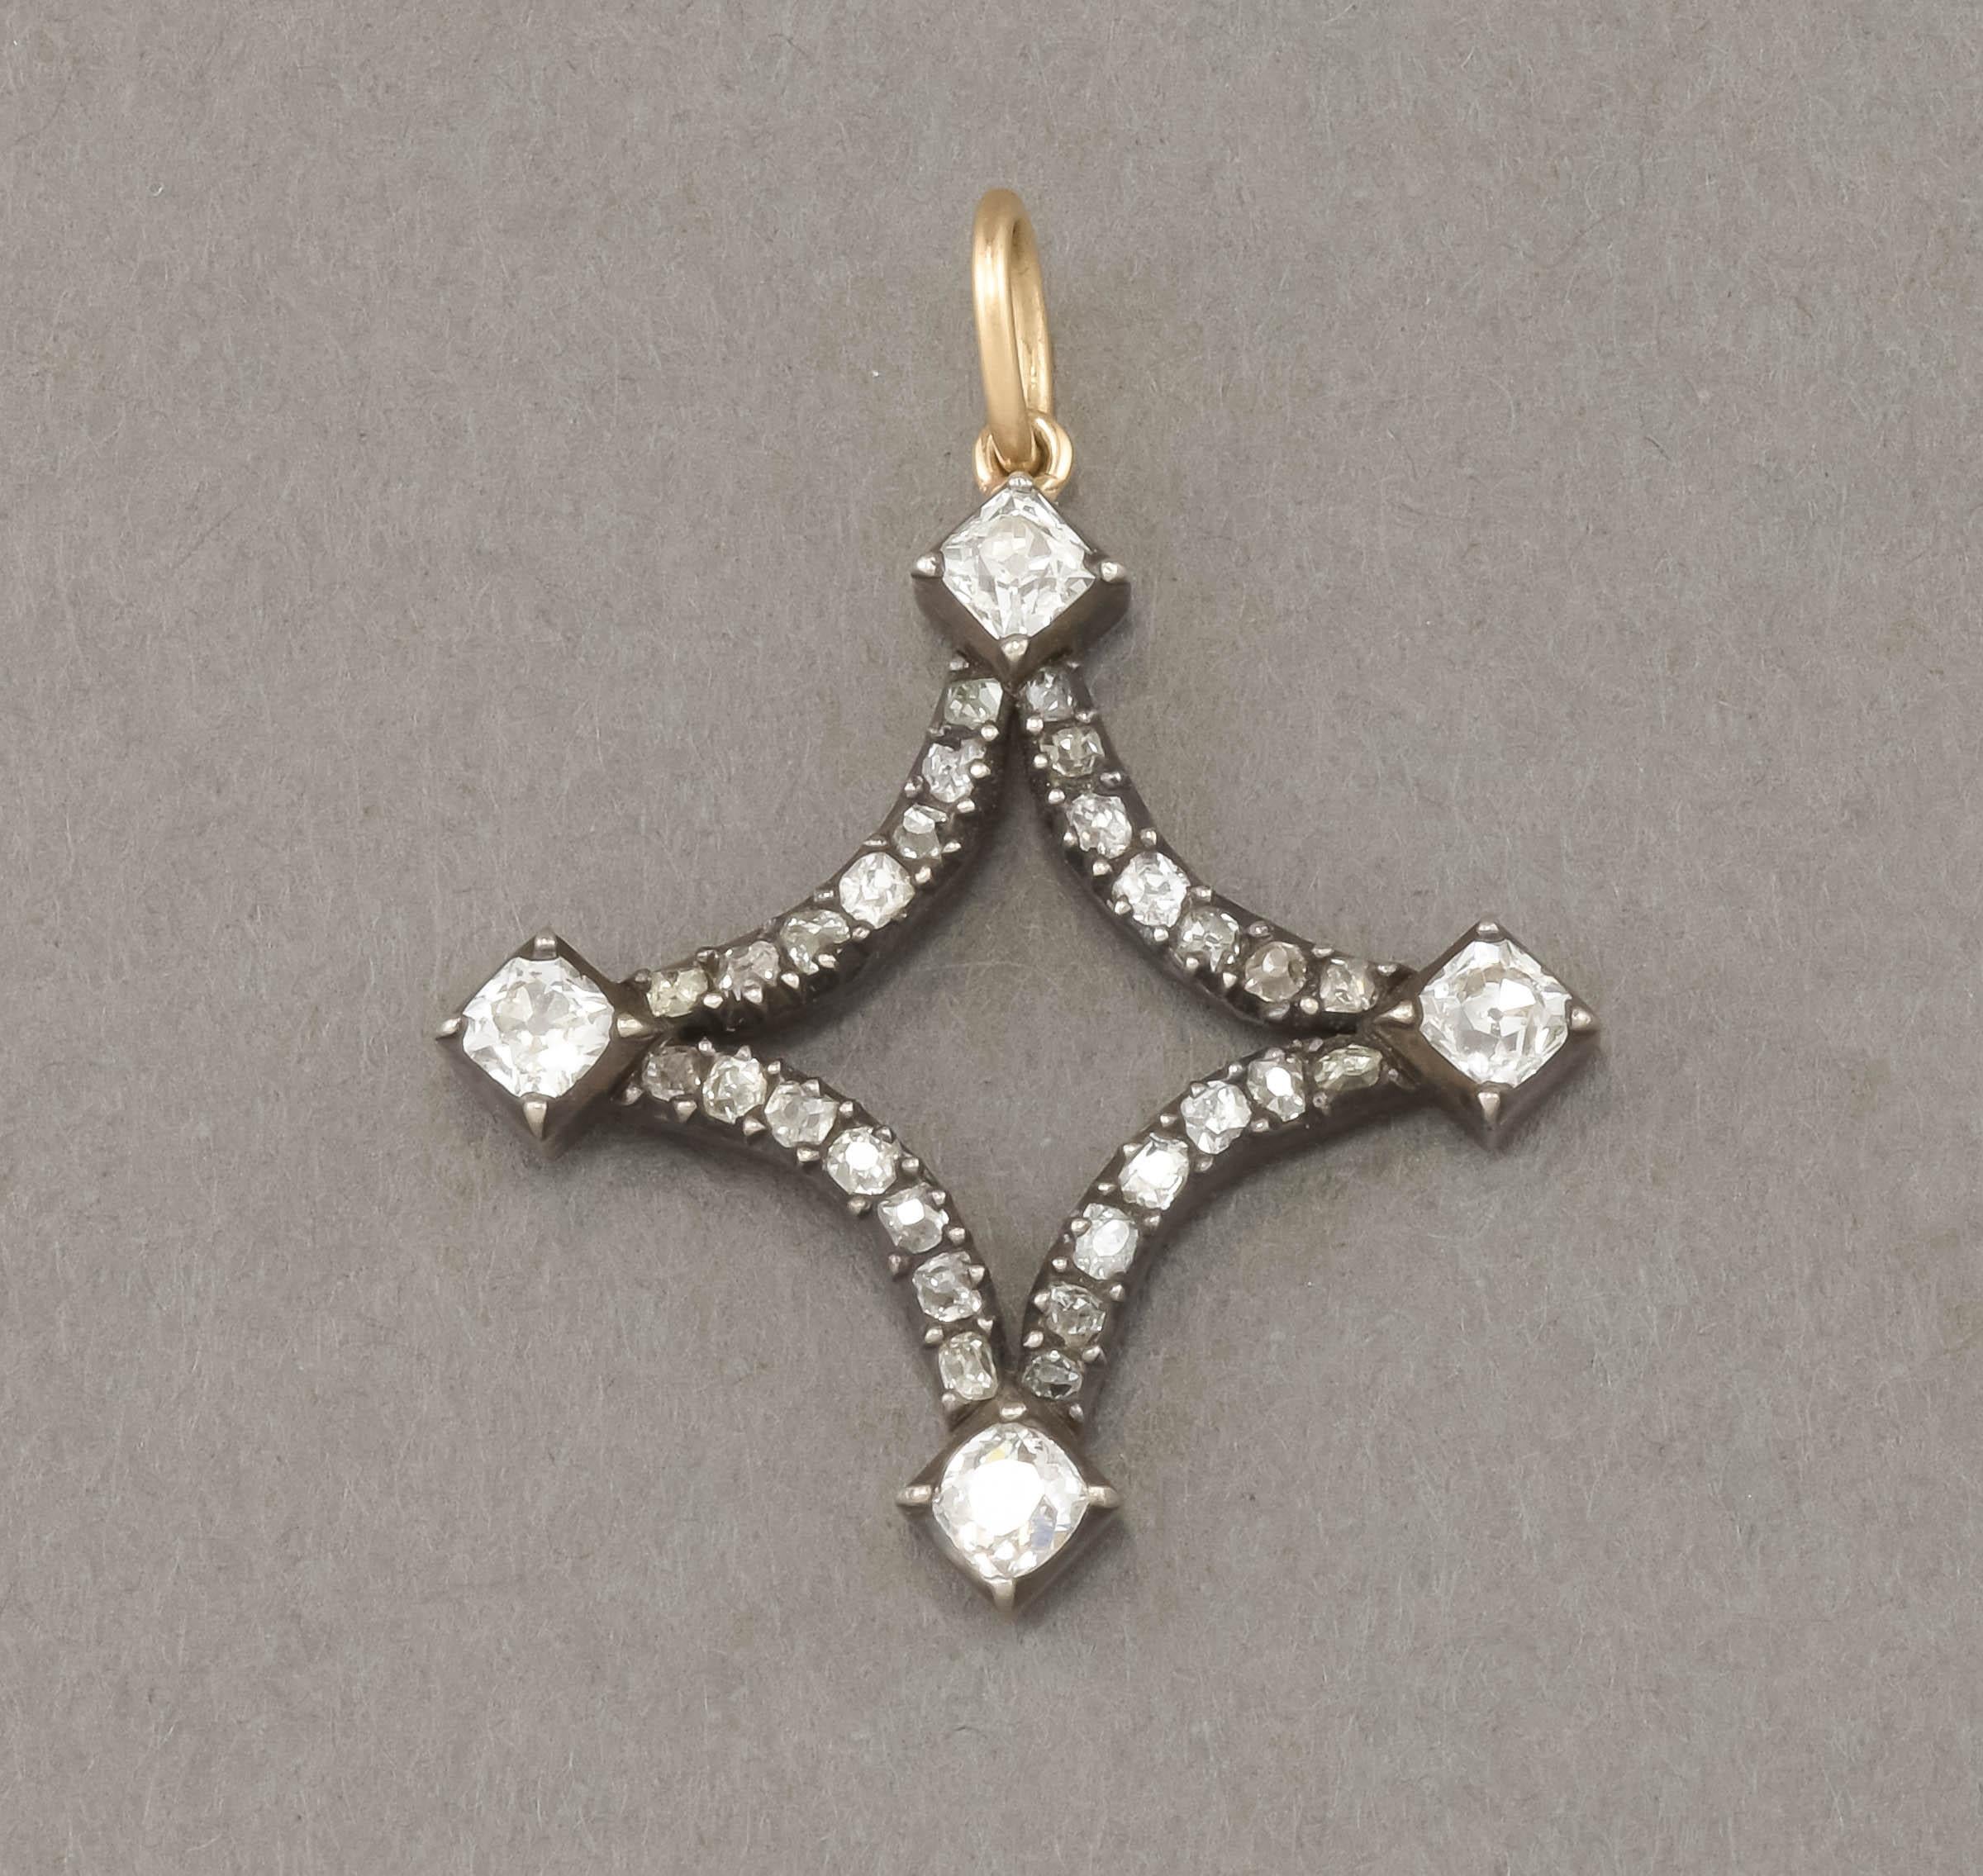 Angeboten wird ein auffälliger antiker Diamant-Anhänger in Form eines stilisierten Sterns.  In diesem Stück, das aus einem größeren antiken Stück aus der georgianischen Ära umgewandelt wurde, glänzen klobige und feurige alte Diamanten im